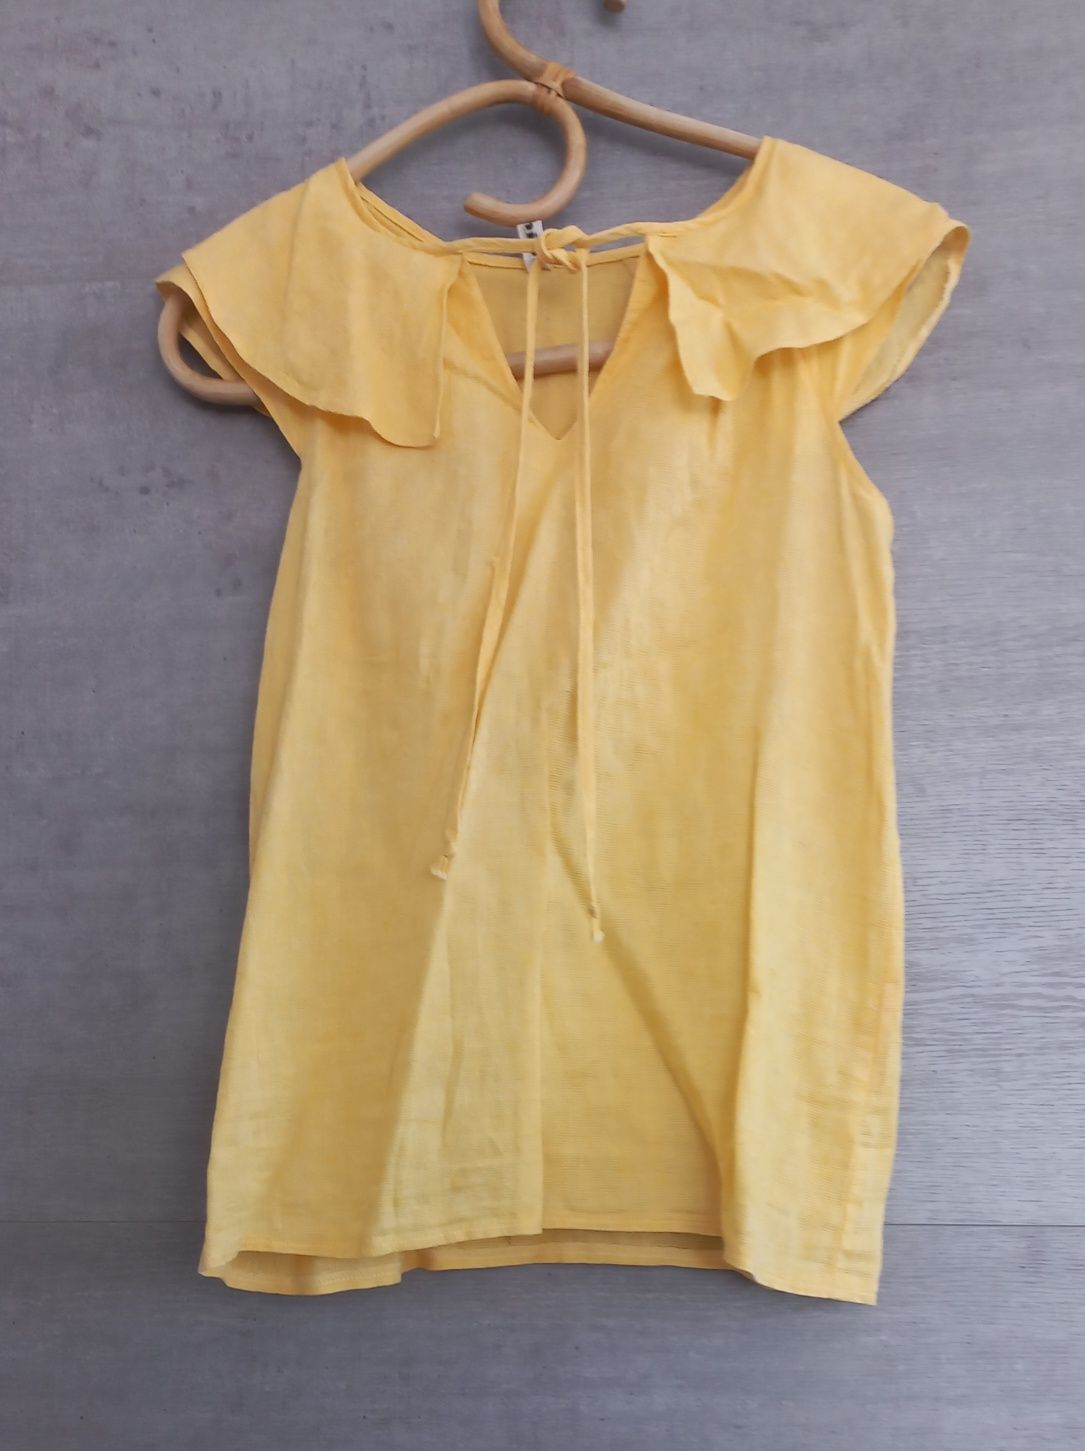 Piekna żółta bluzka firmy Damina, roz. S, stan bdb.